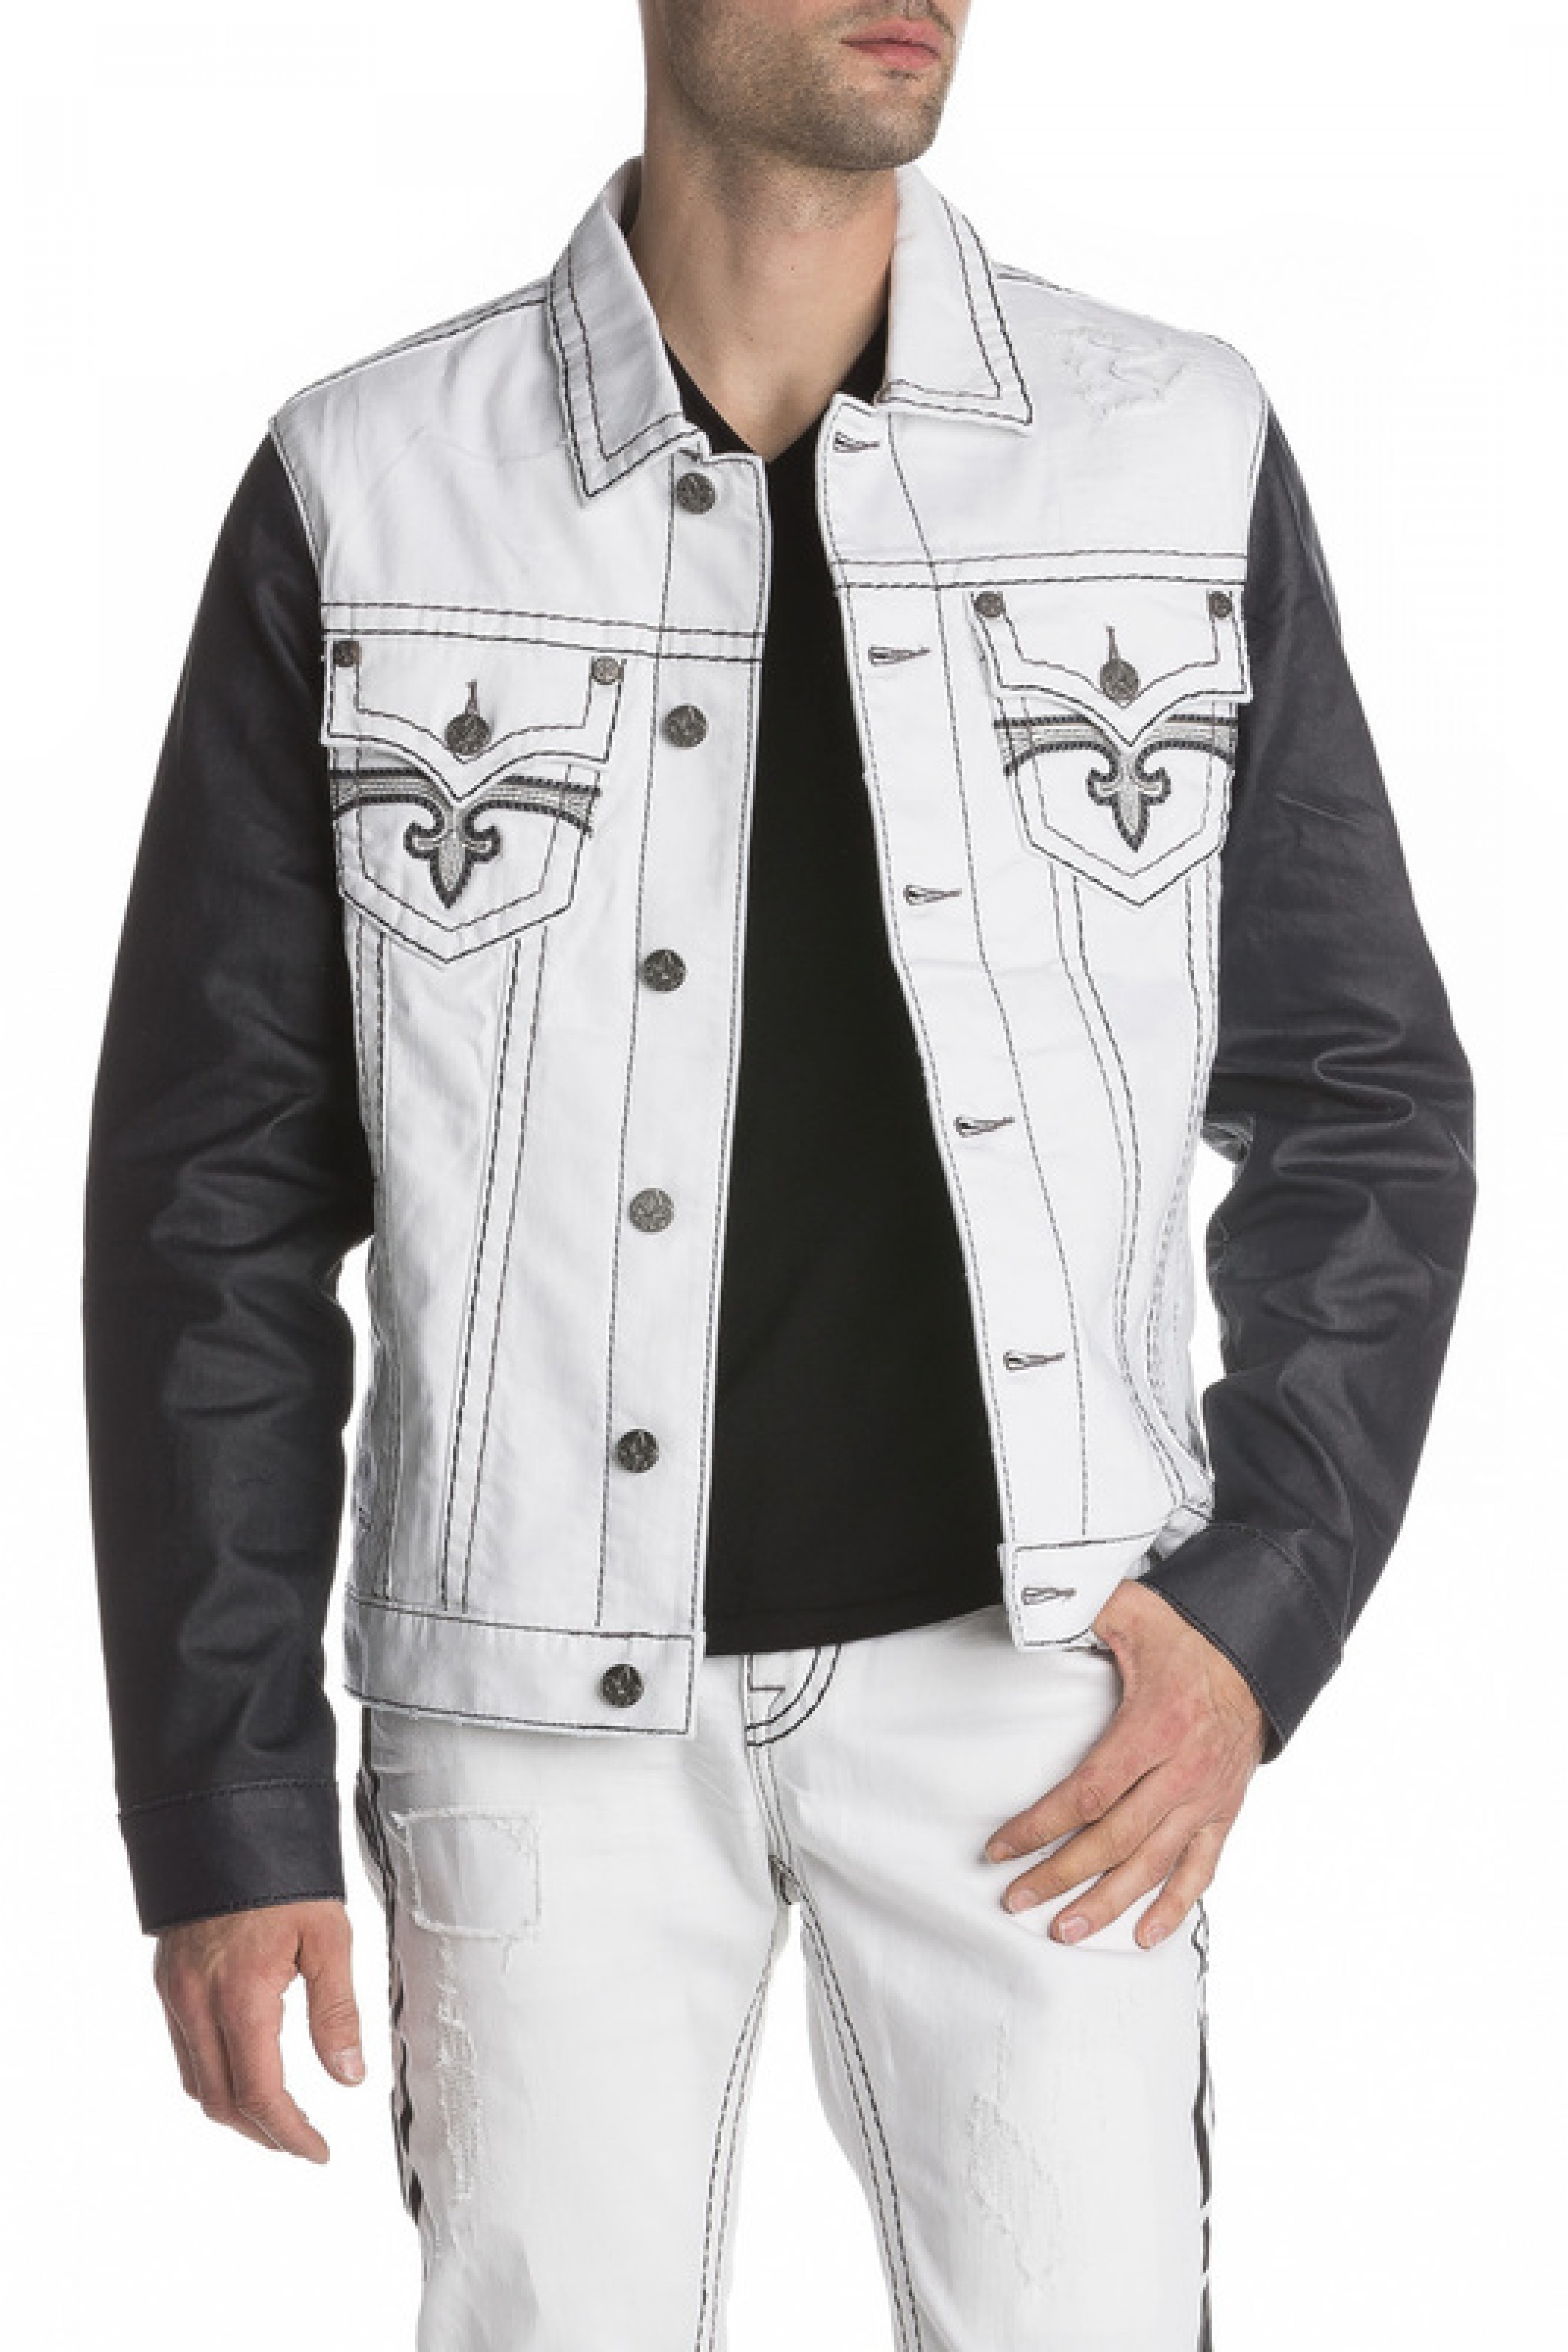 rock revival jean jacket